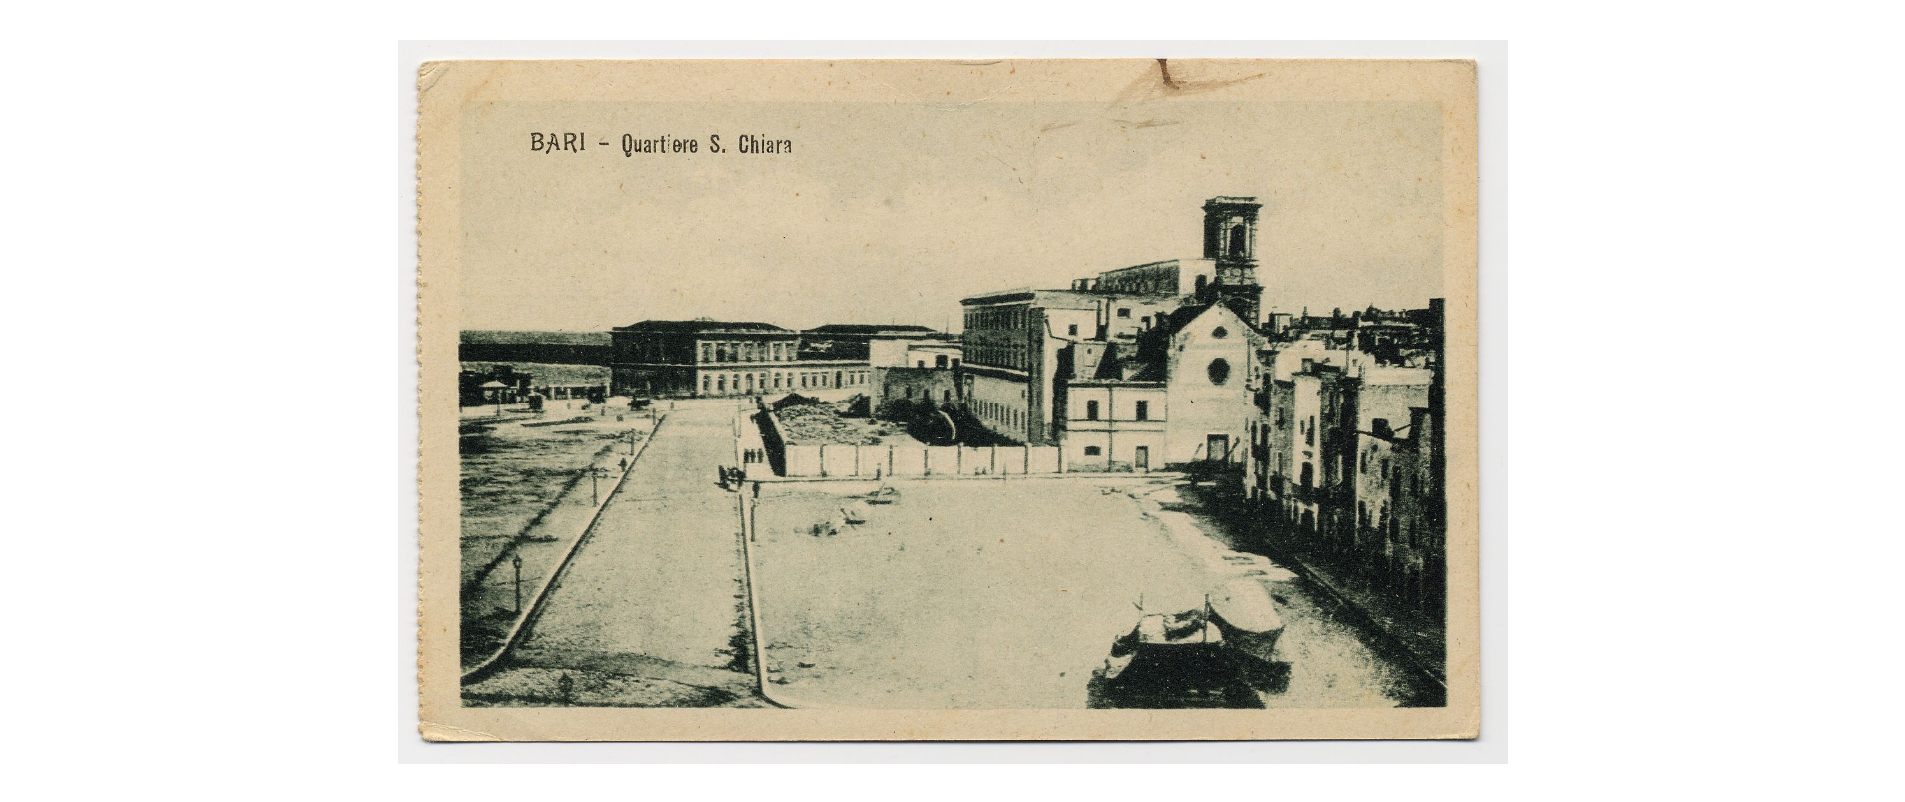 Fotografo non identificato, Bari - Quartiere S. Chiara (Veduta della chiesa e dell'ex convento di S. Chiara), 1920-1930, FFC013919